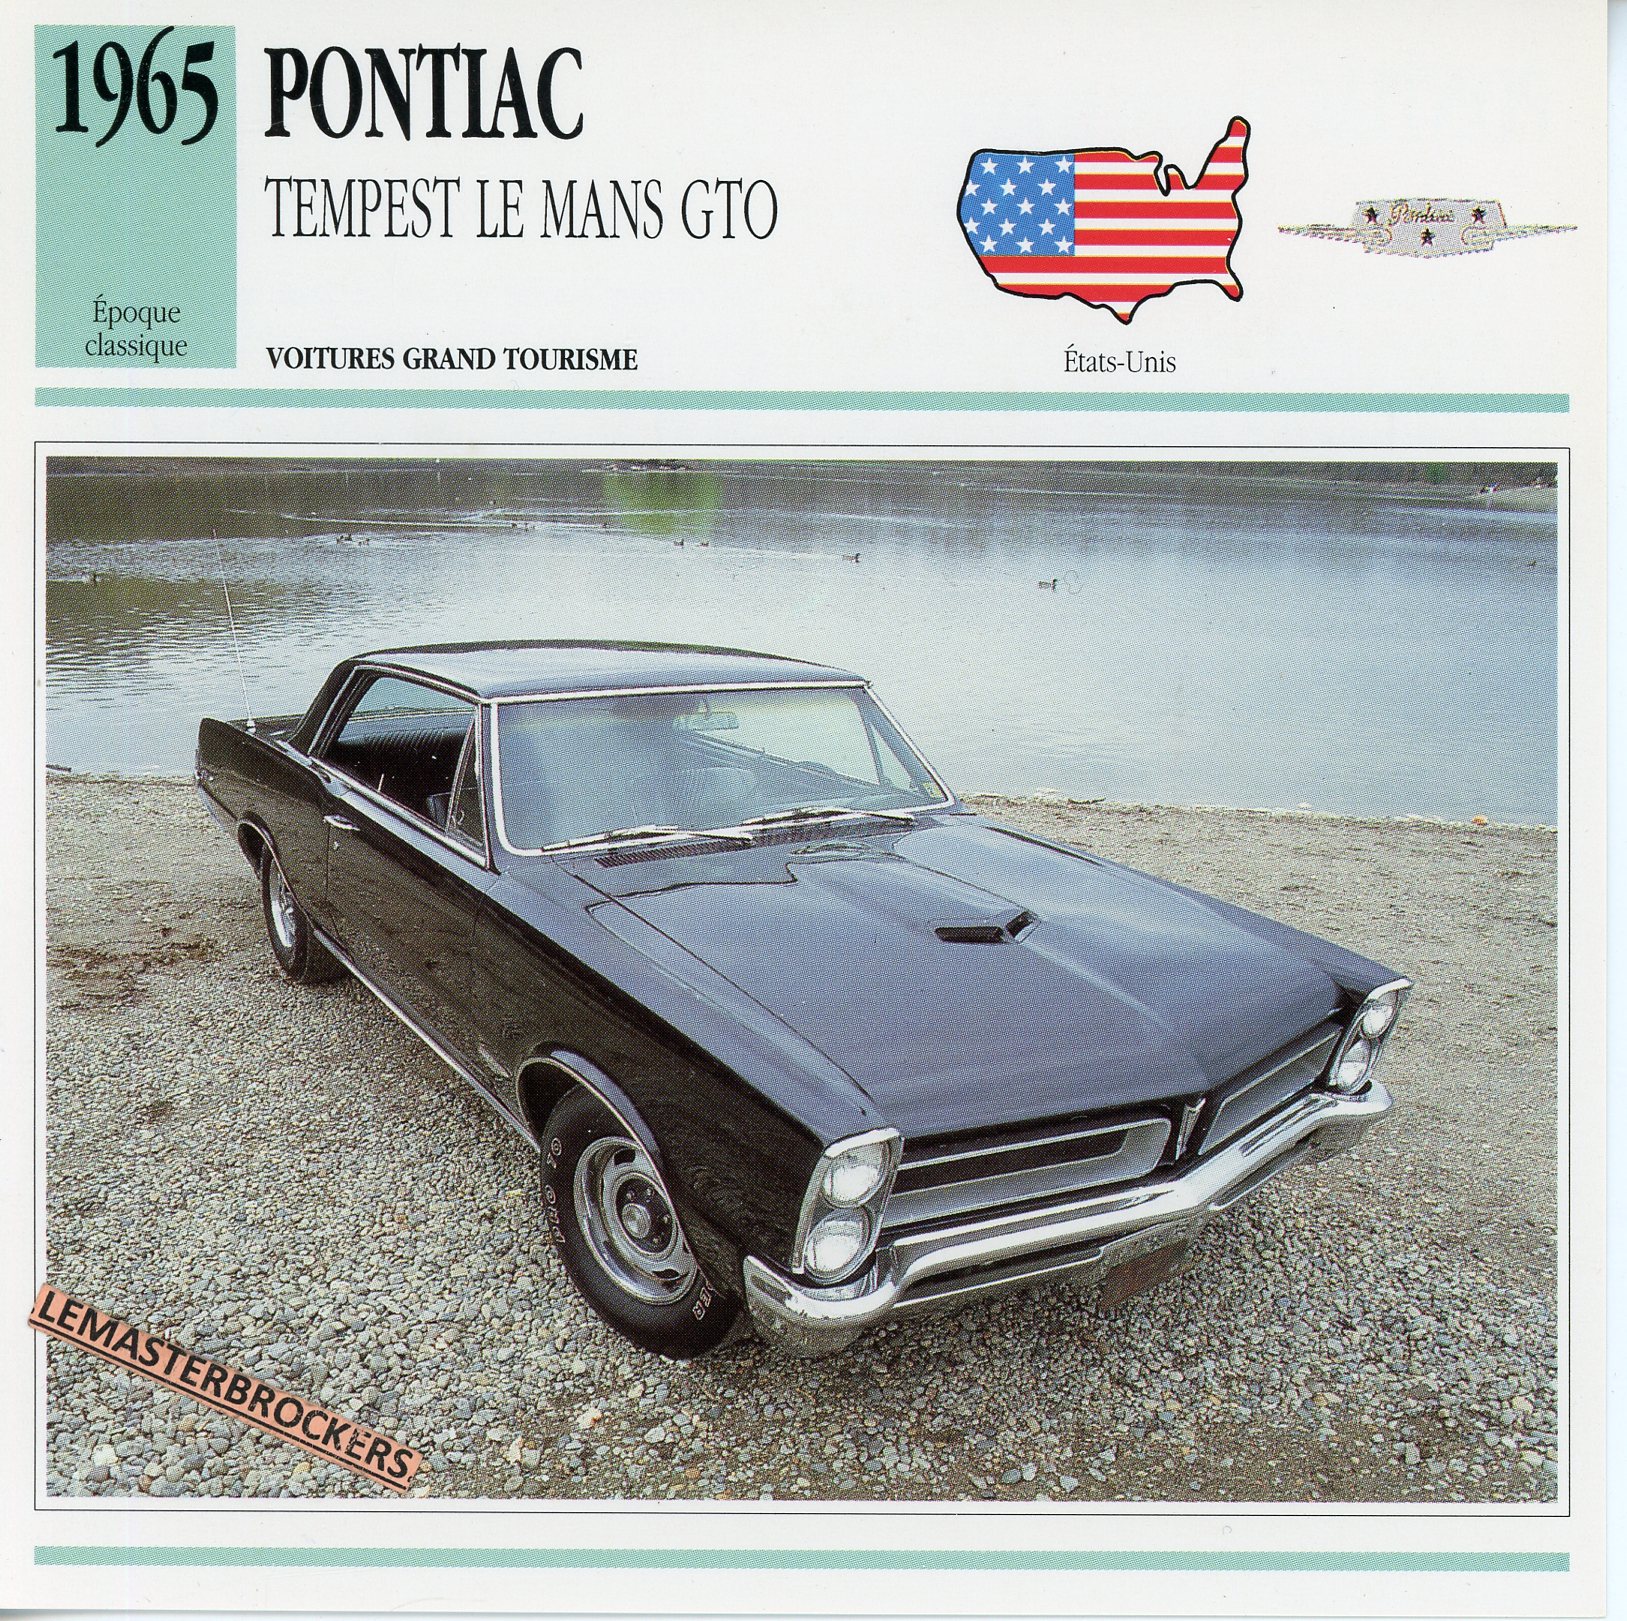 PONTIAC-TEMPEST-LE-MANS-GTO-1965-FICHE-AUTO-ATLAS-LEMASTERBROCKERS